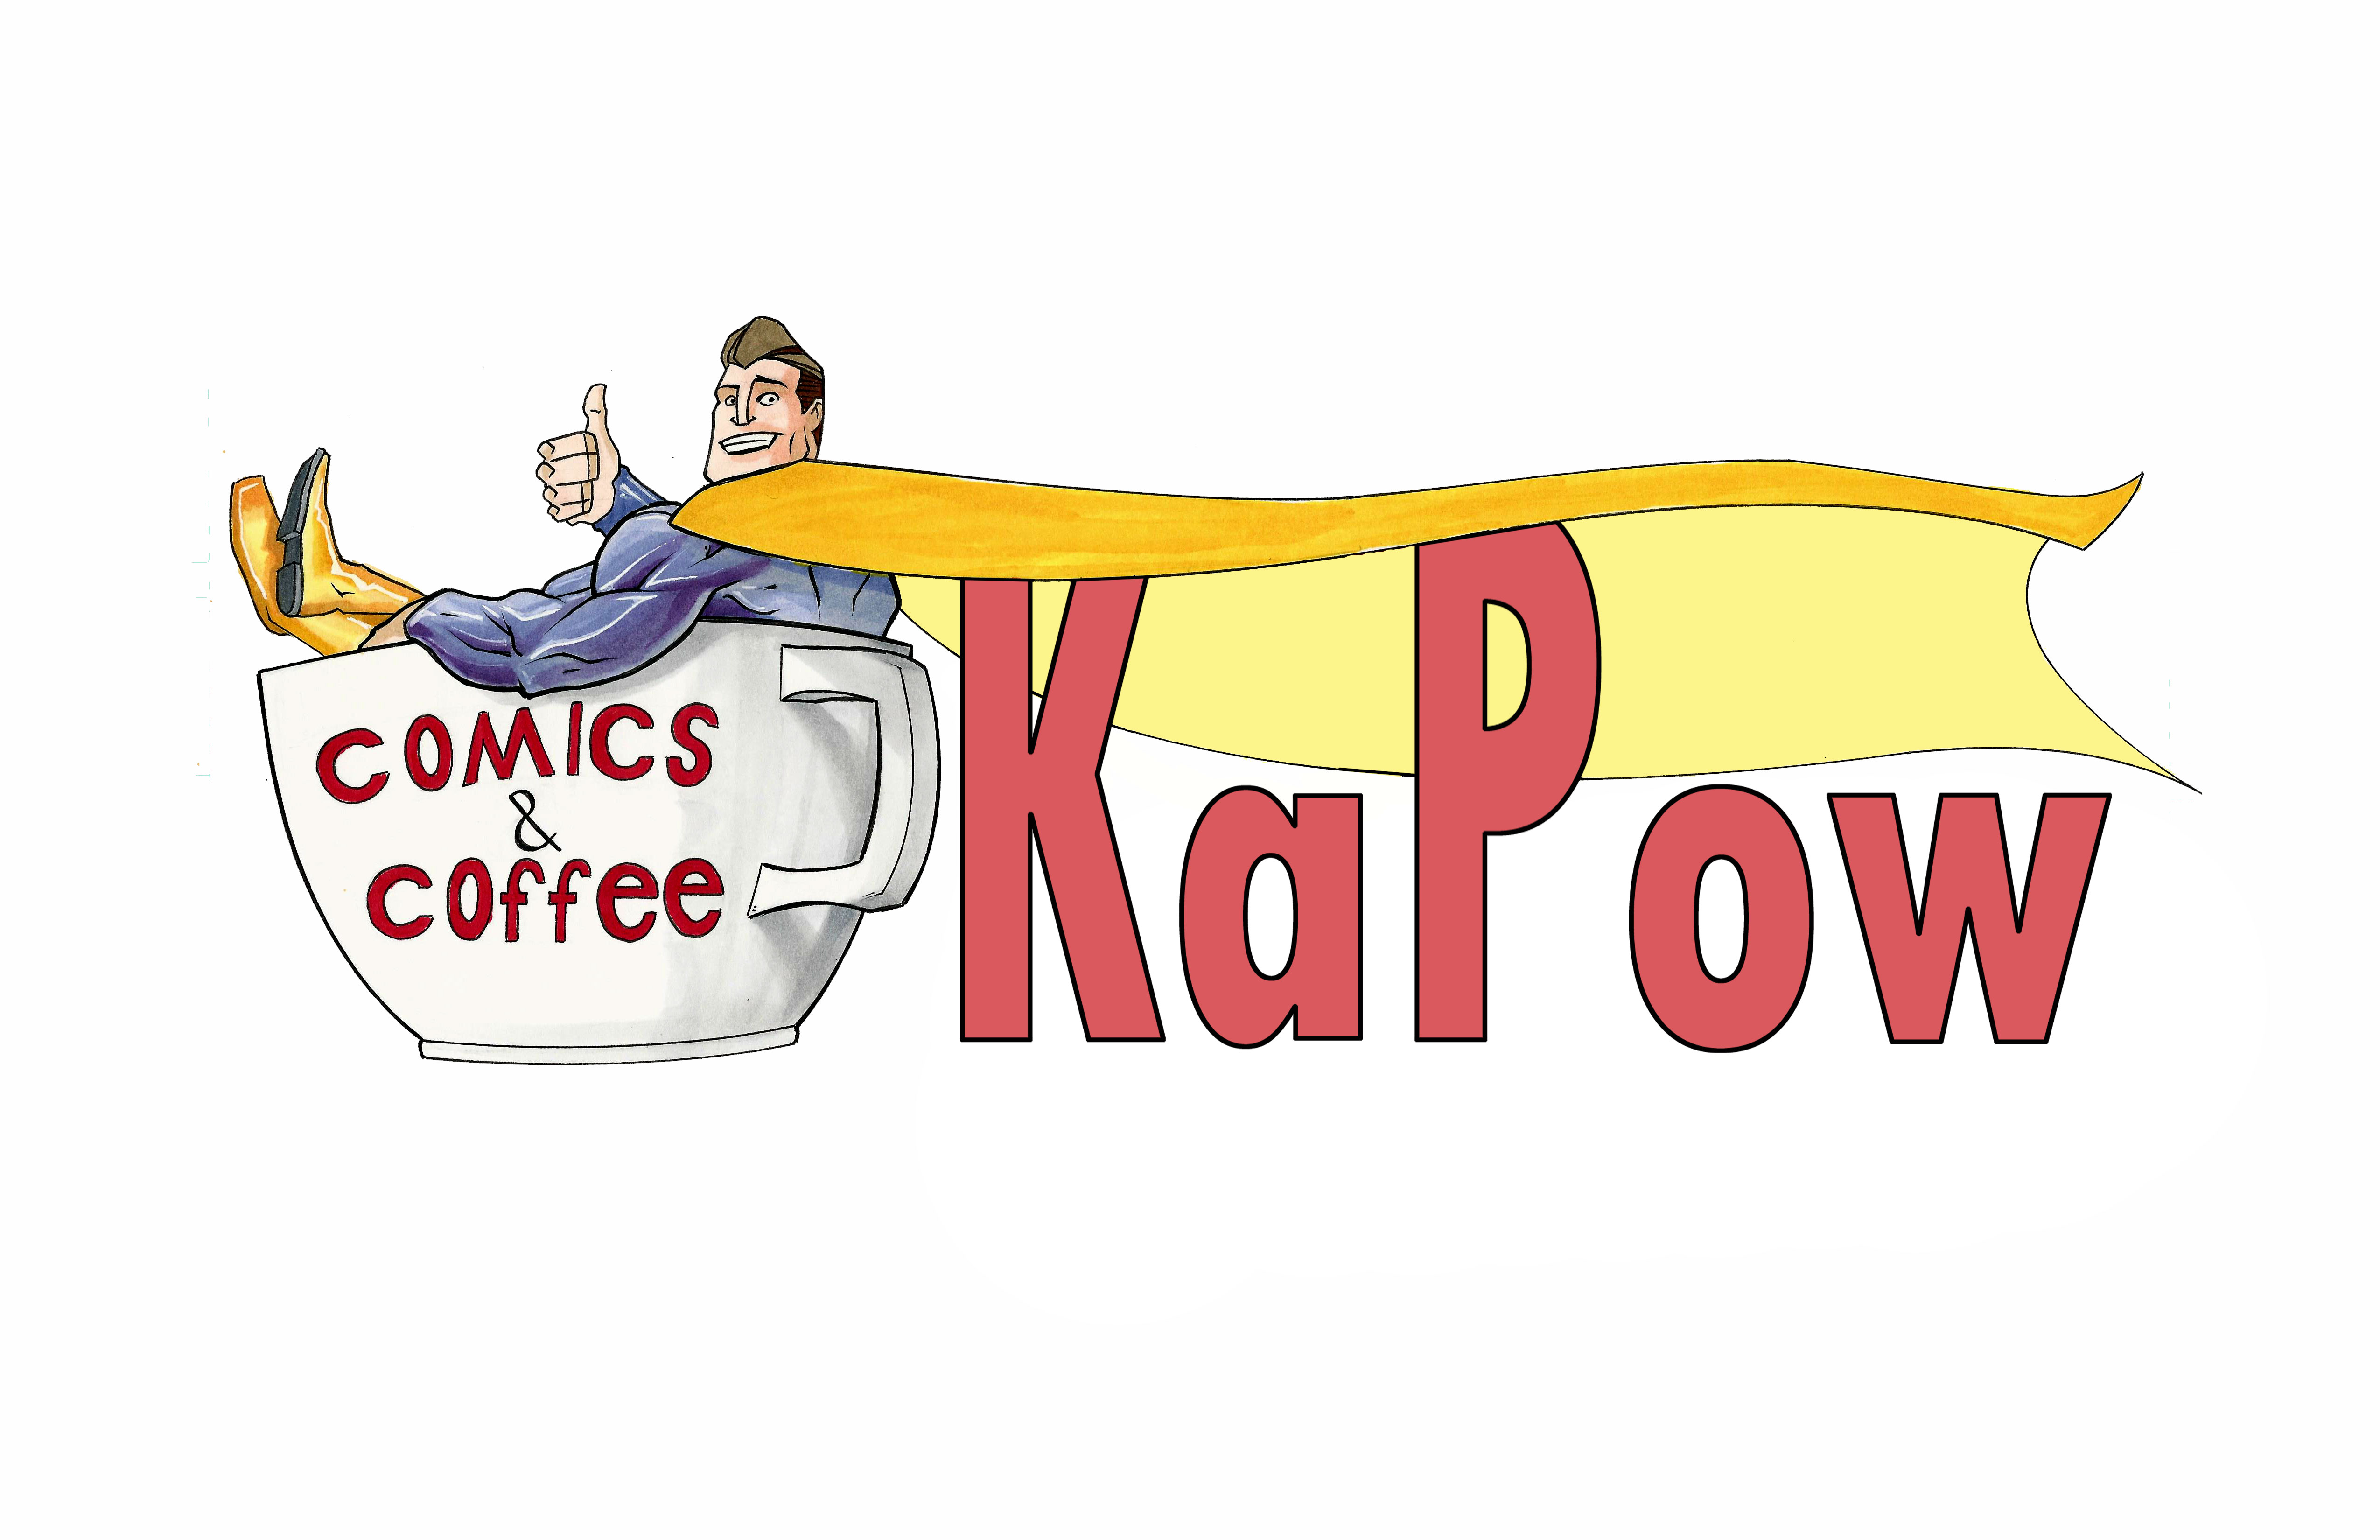 KAPOW COMICS & COFFEE